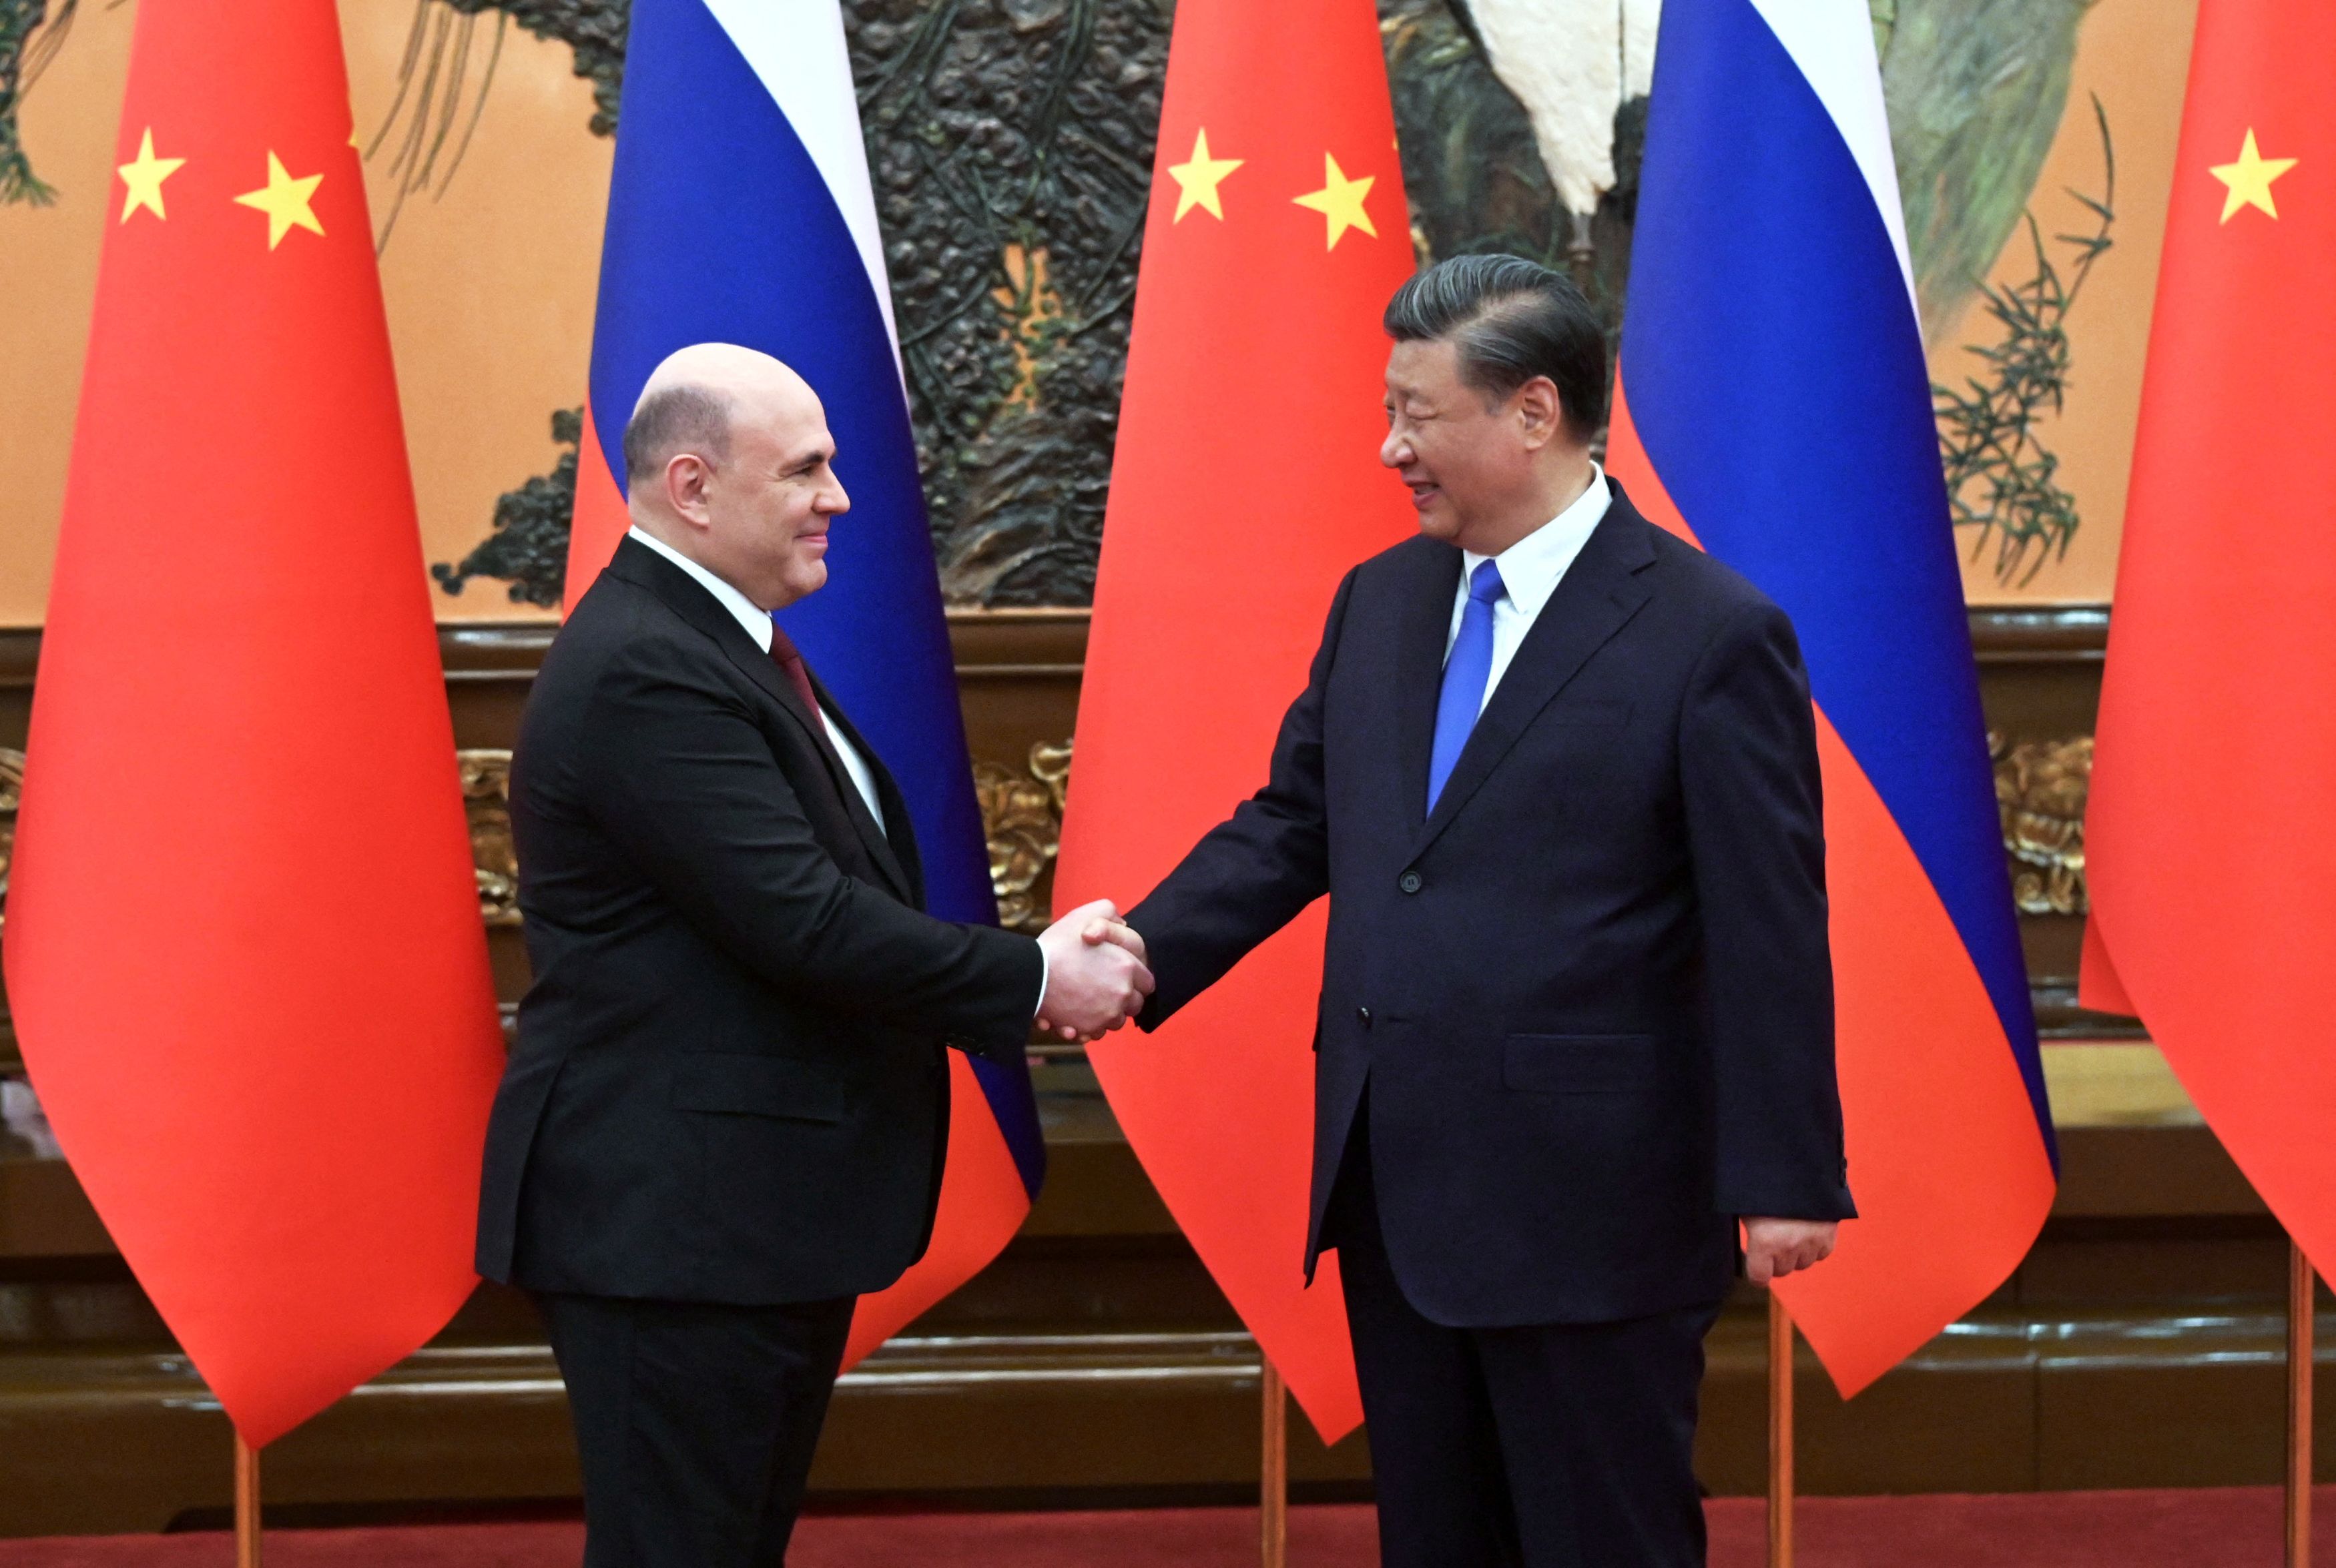 Σι Τζινπίνγκ: Υπόσχεται στη Μόσχα «σταθερή υποστήριξη» στα «θεμελιώδη συμφέροντα»